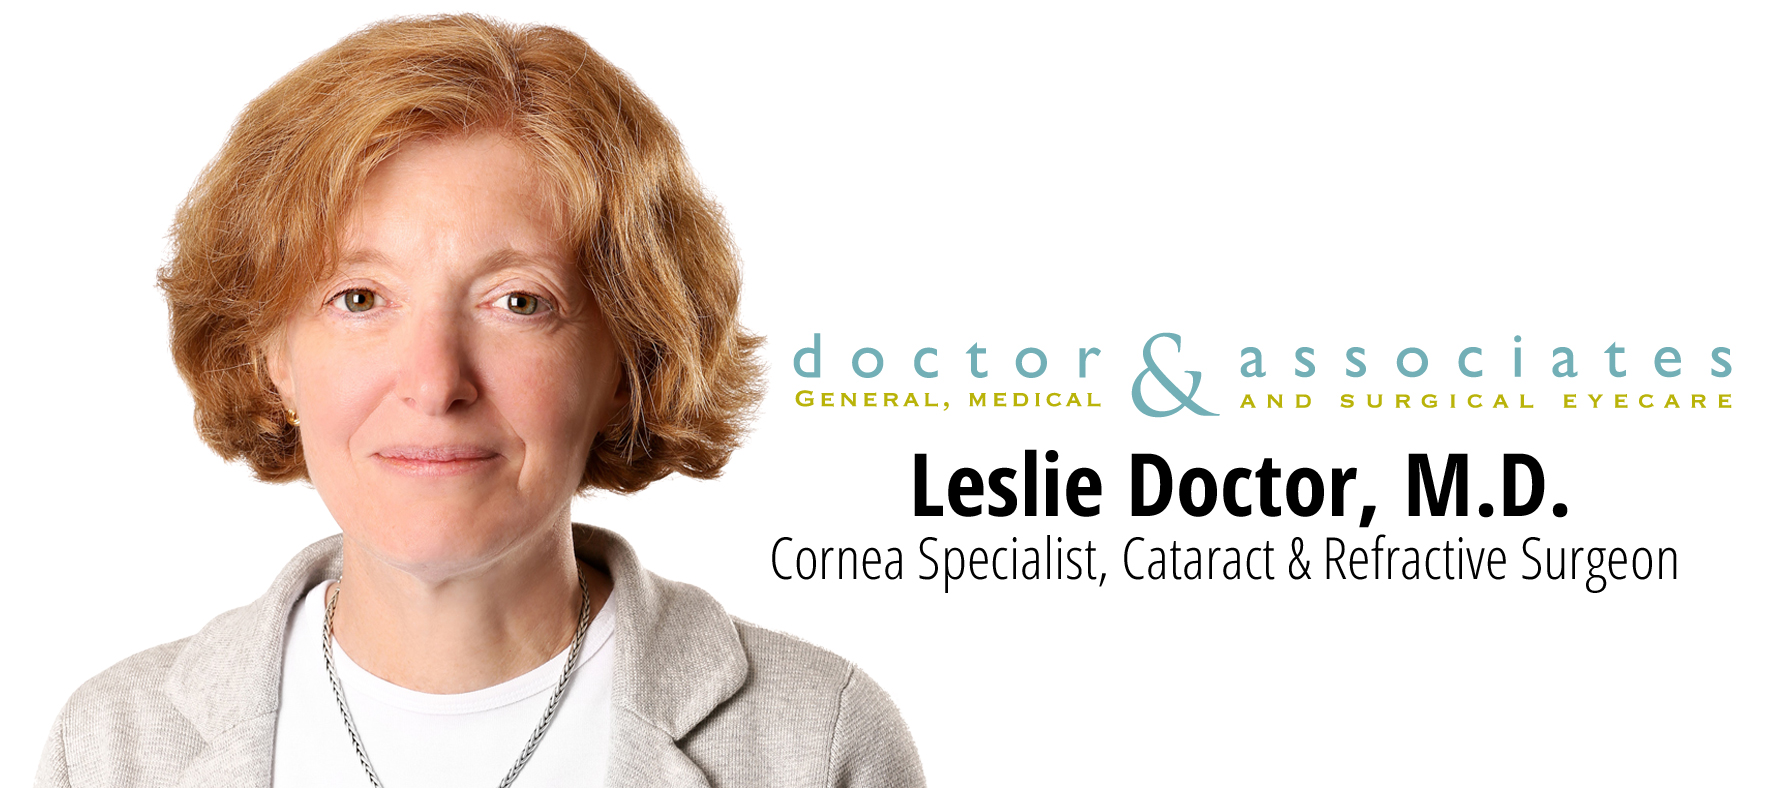 Leslie Doctor